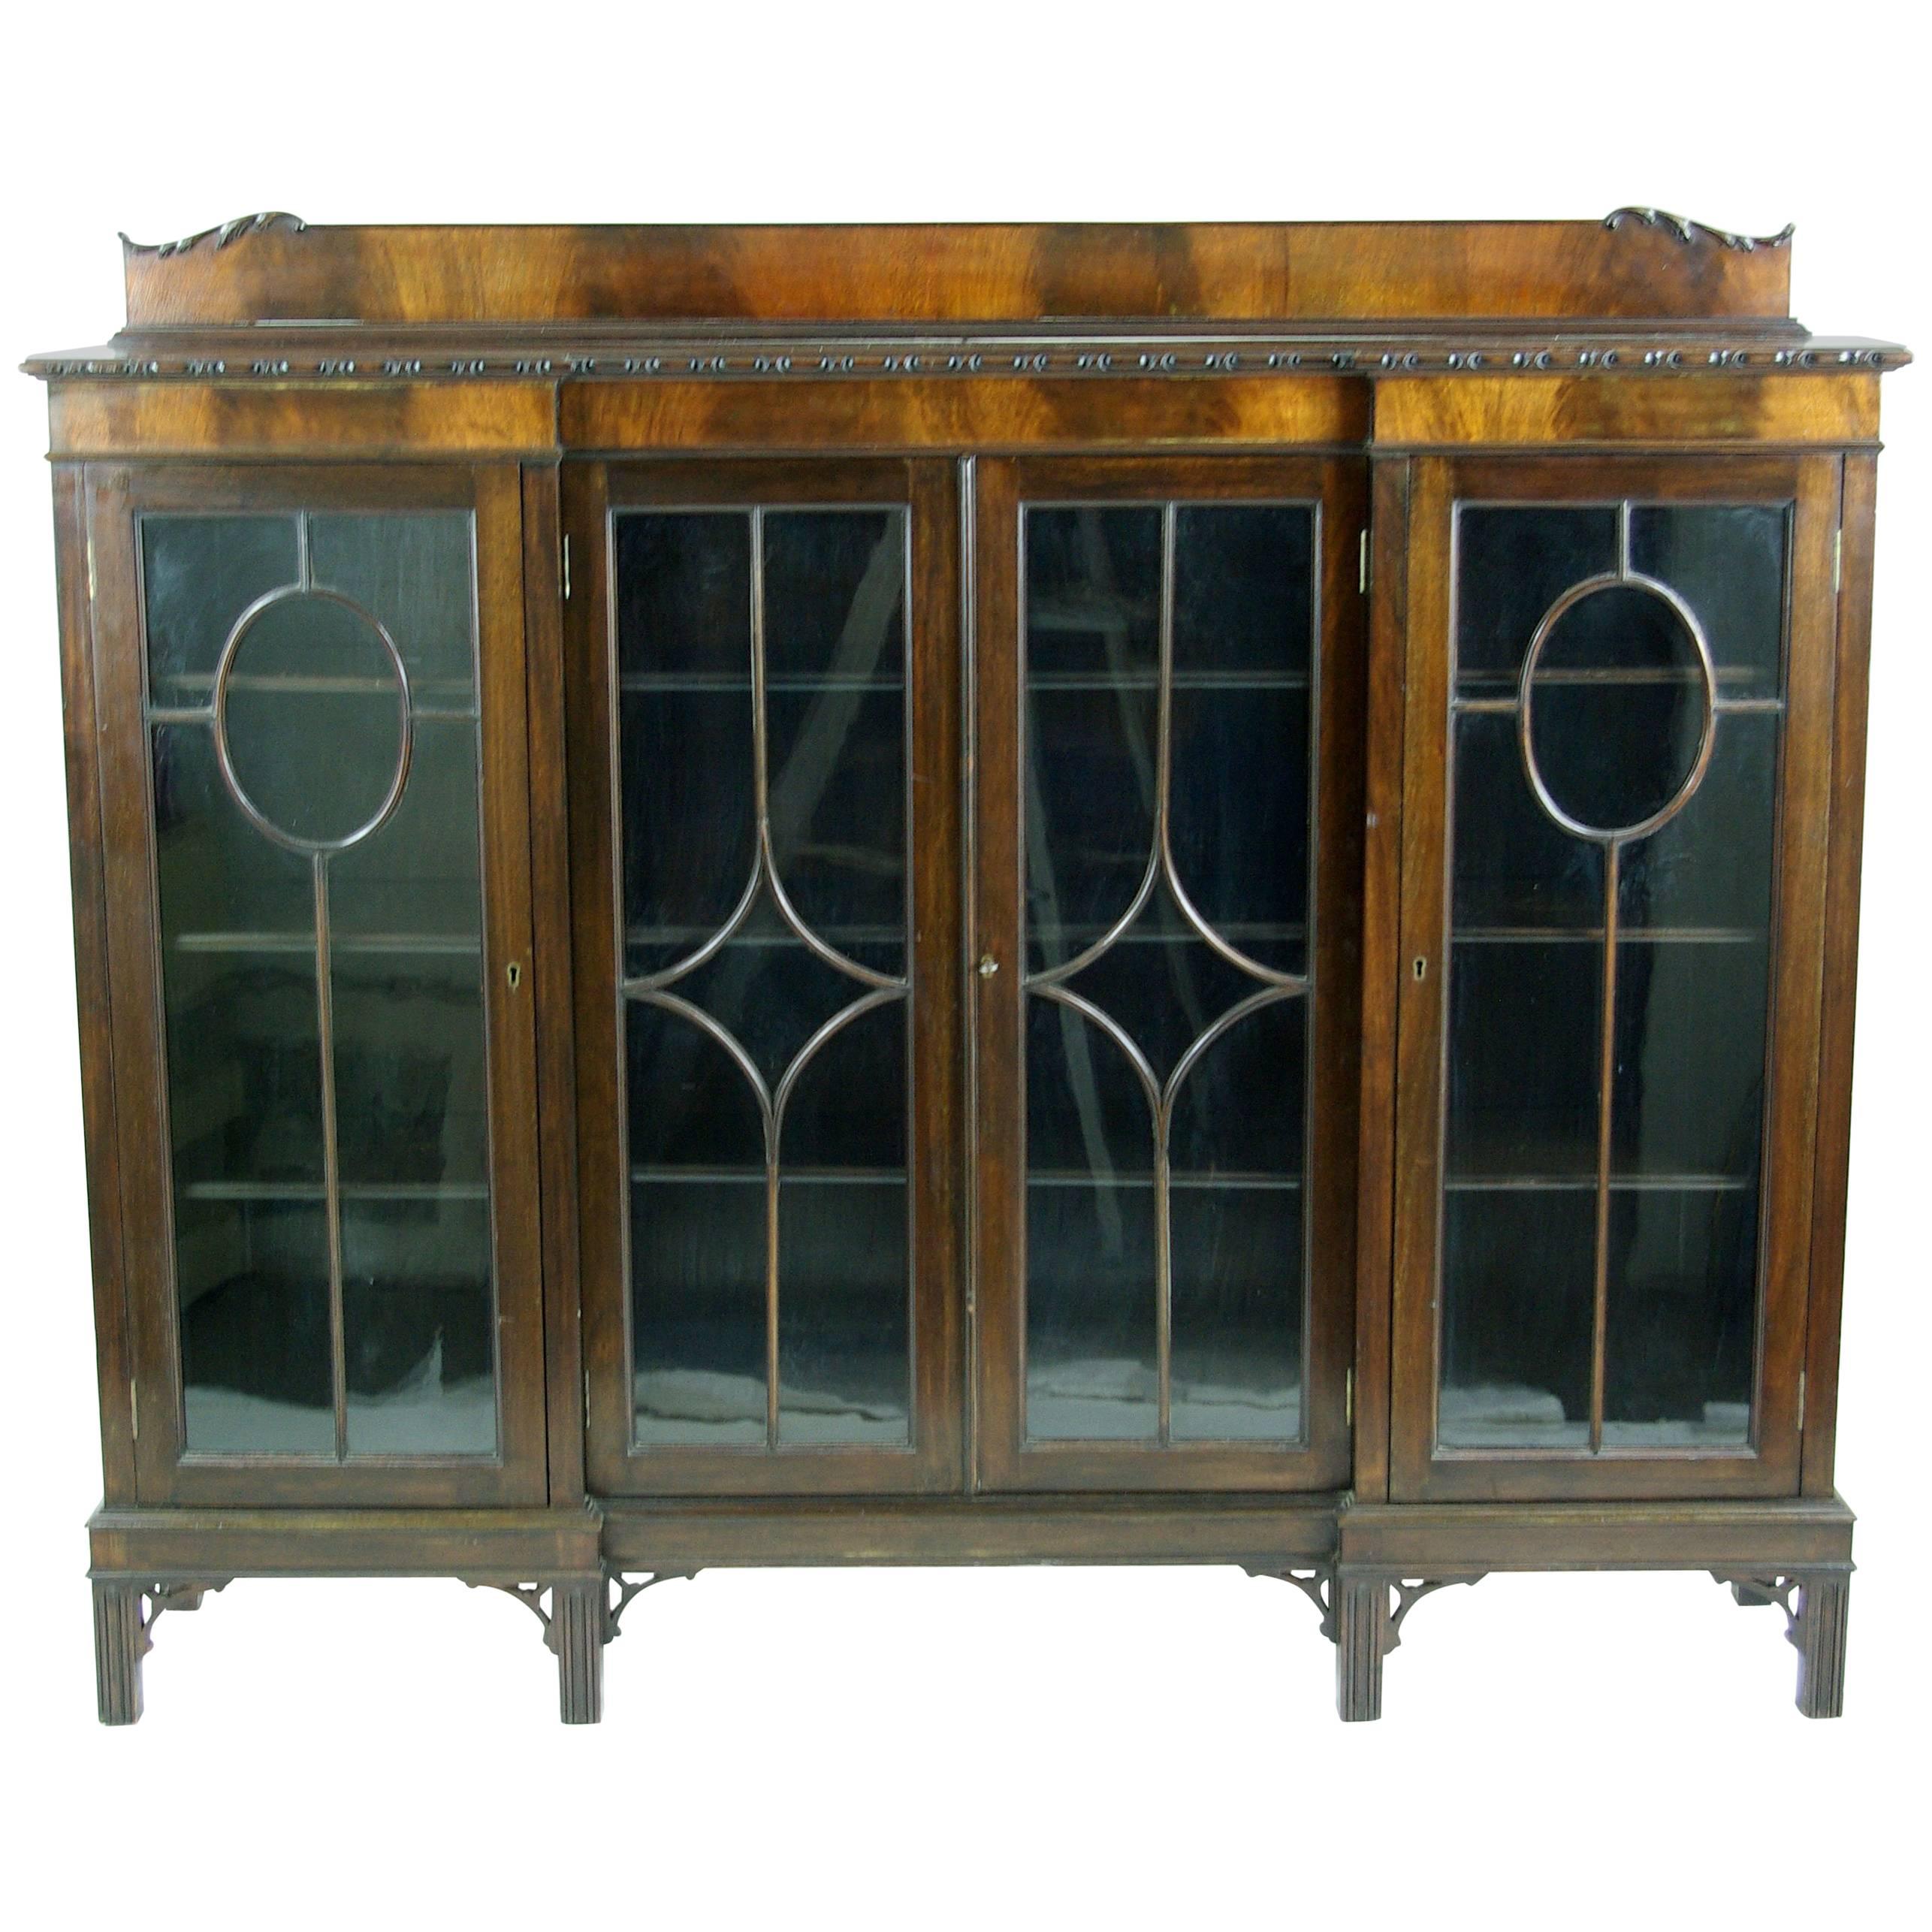 Antique Scottish Four-Door Inverted Mahogany Bookcase, Display, Curios Cabinet